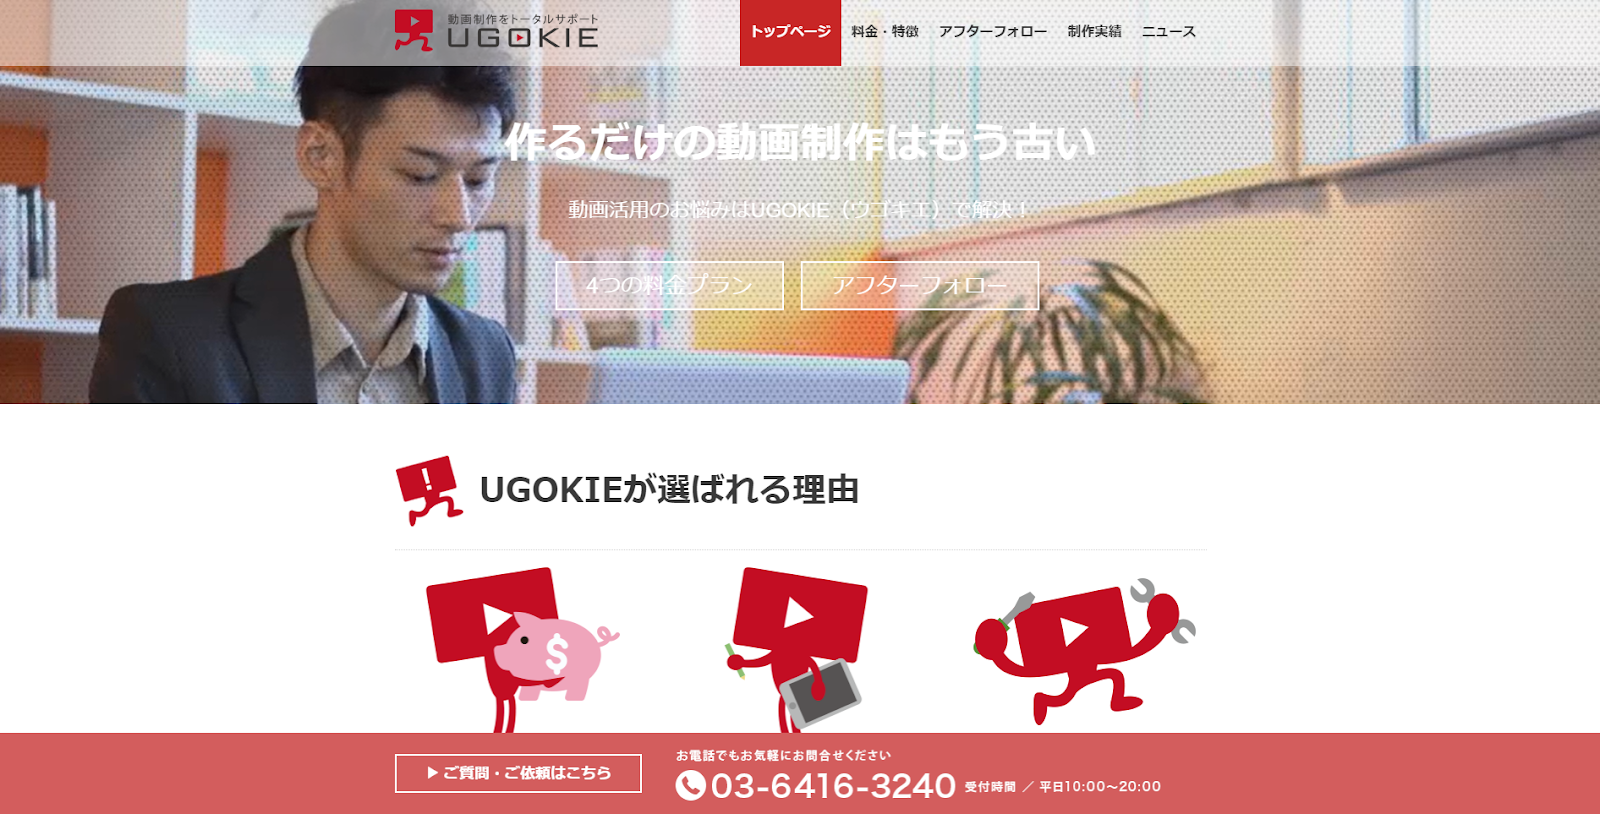 UGOKIE公式サイト